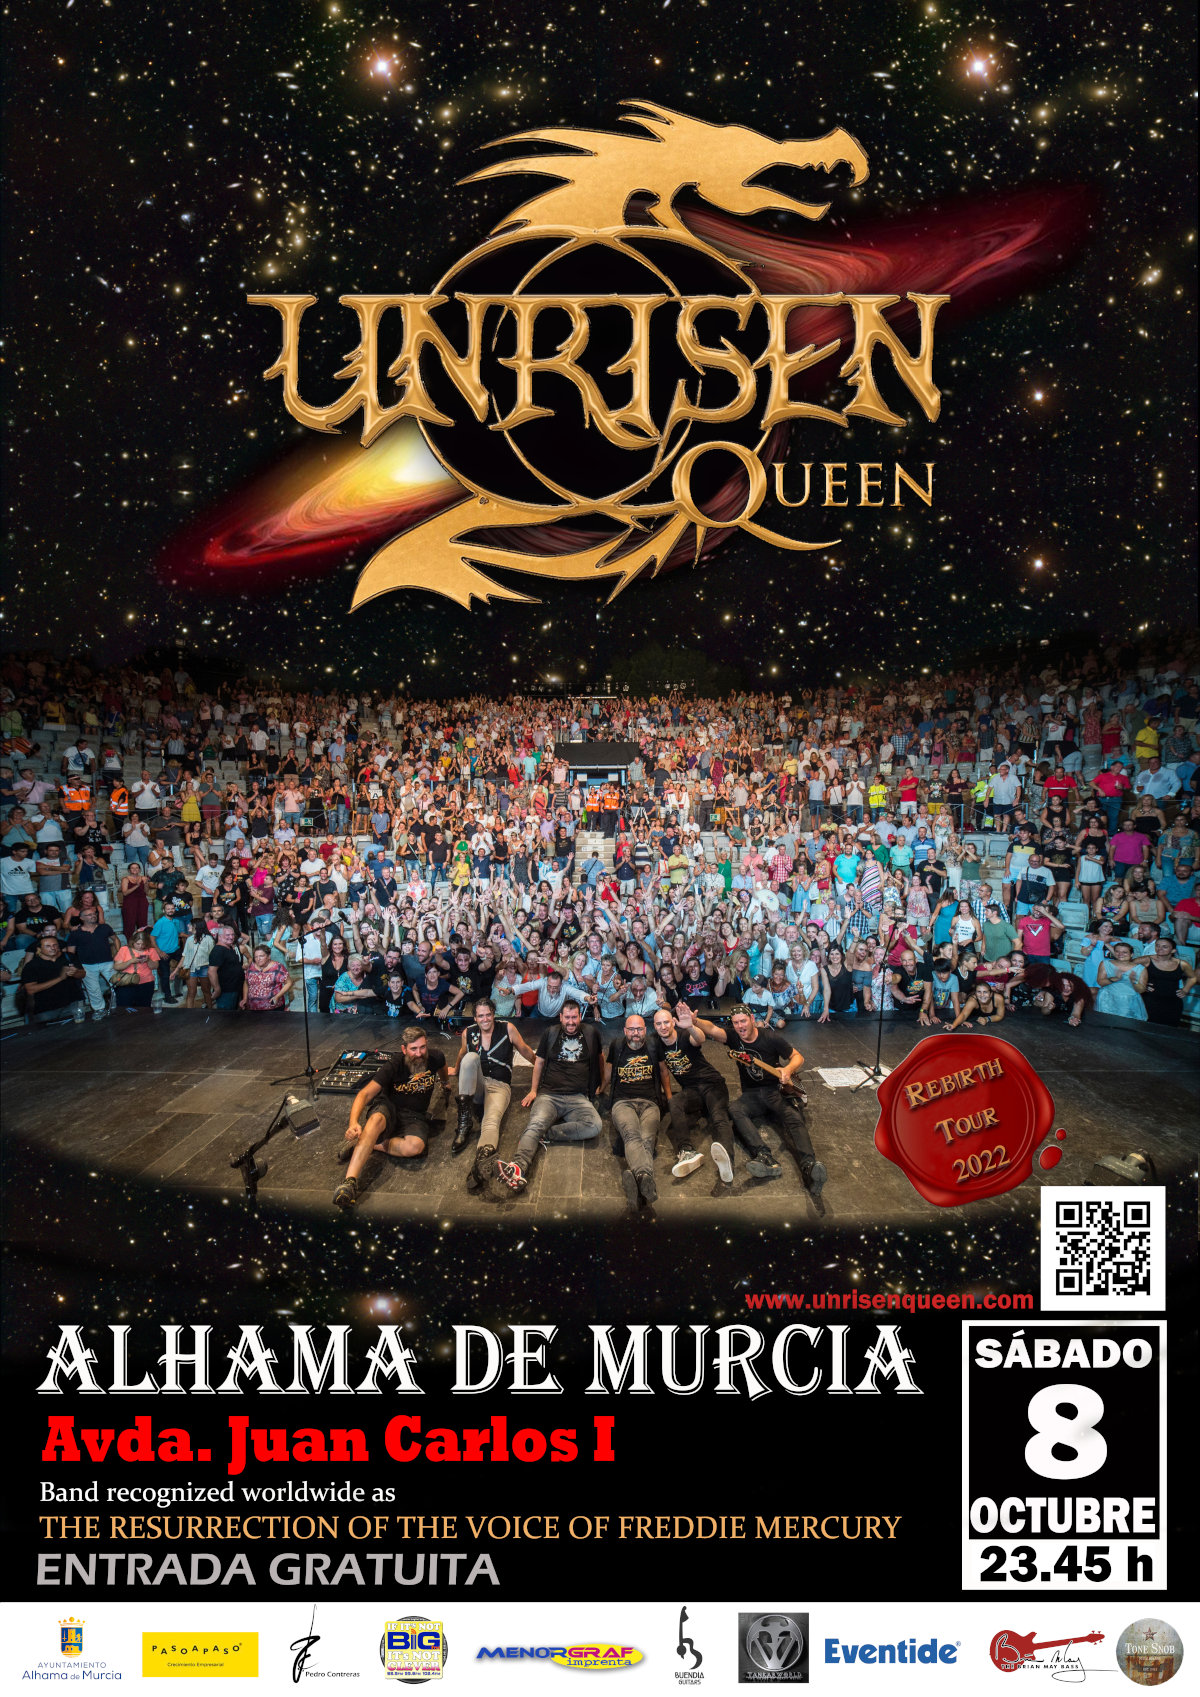 Concierto Unrisen Alhama de Murcia 8 octubre 2022.